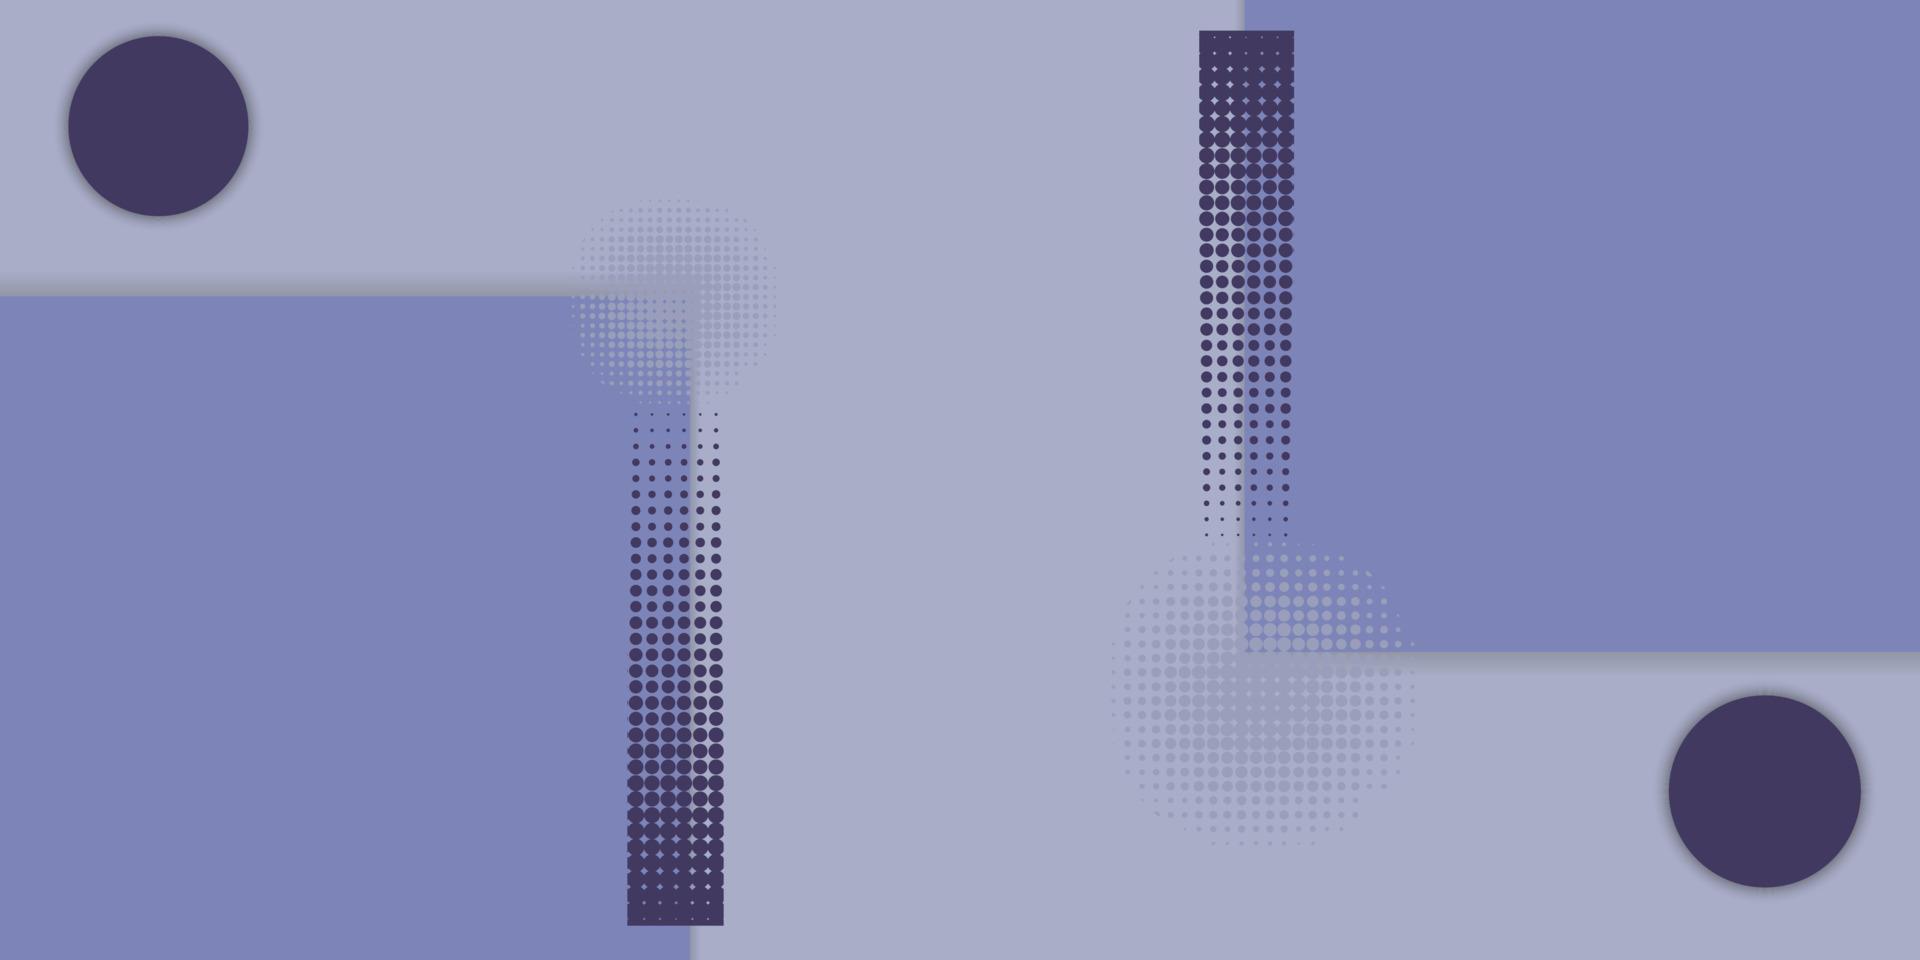 fondo geométrico púrpura creativo con cuadrados, círculos y puntos. archivo vectorial vector